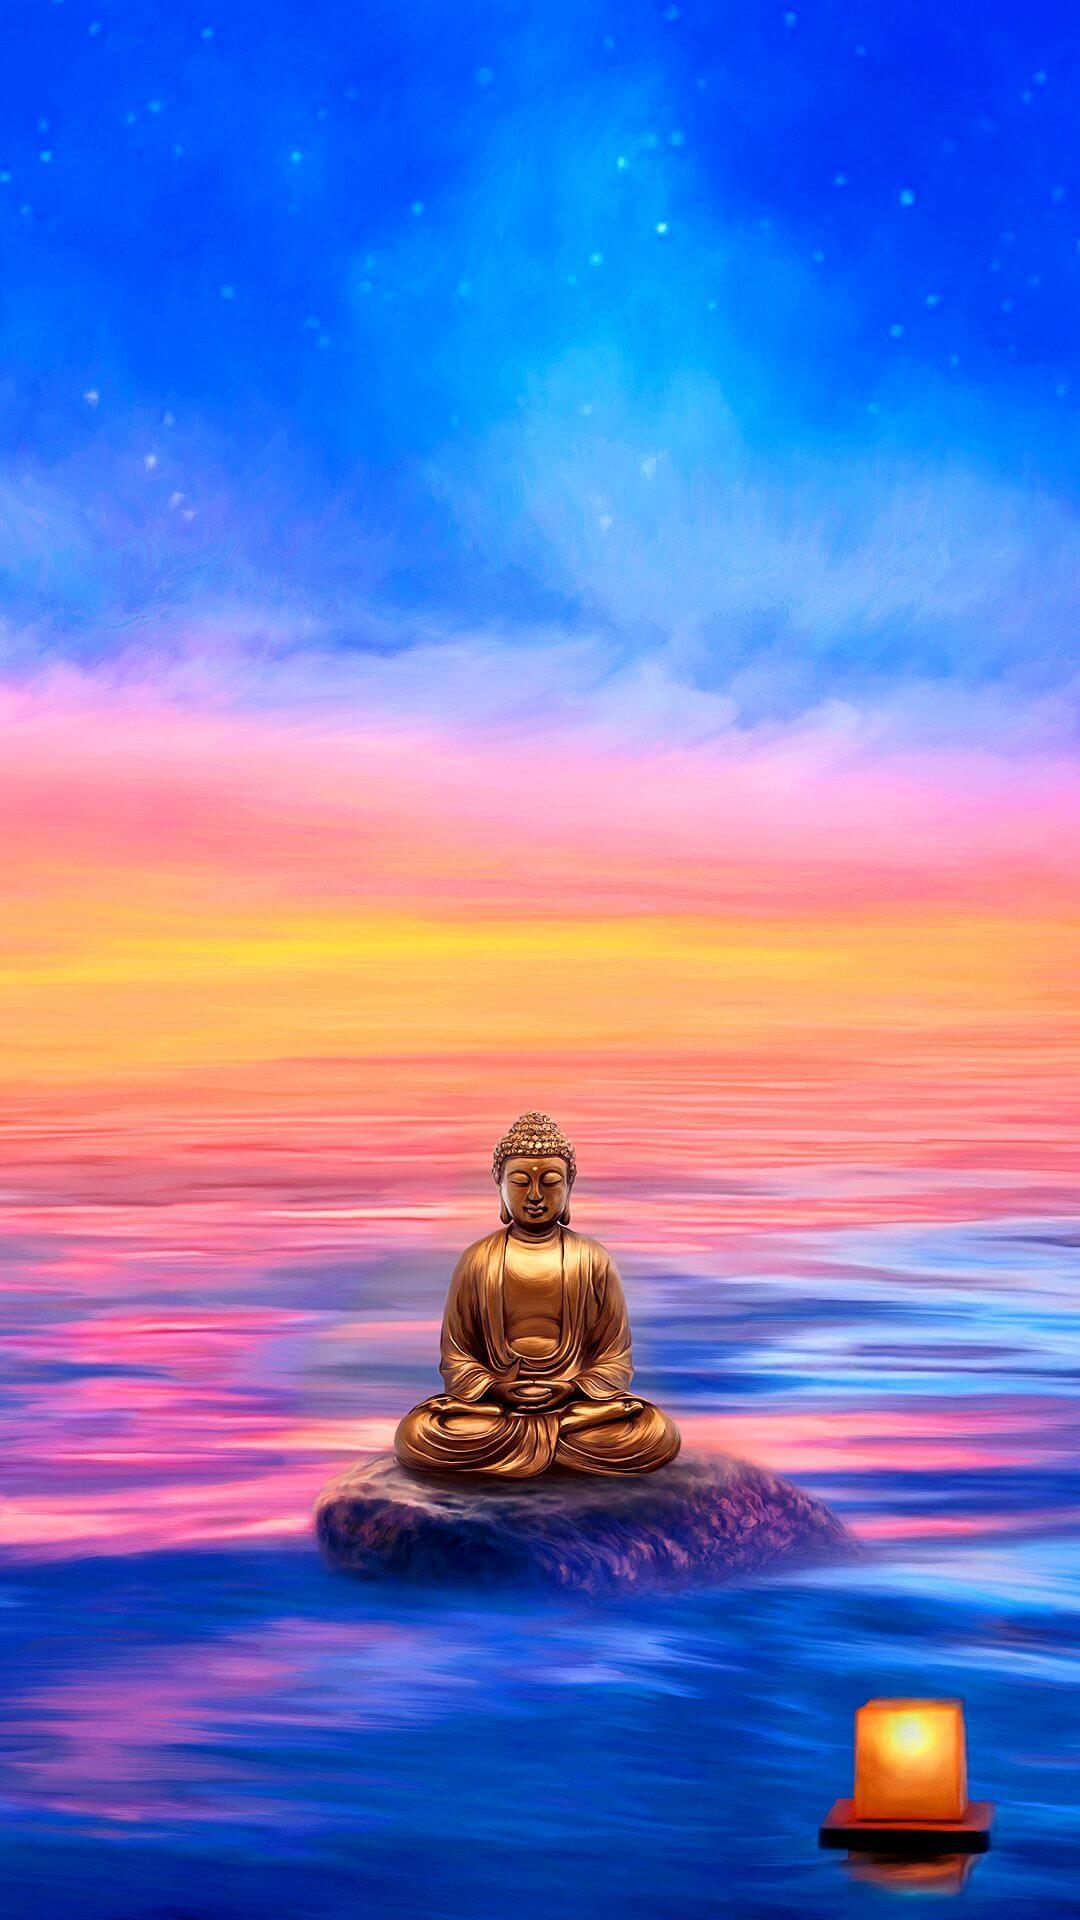 Cảm giác bình an là một trạng thái cảm xúc tuyệt vời mà ai cũng mong muốn có được. Hãy để những bức ảnh liên quan đến Phật giáo giúp bạn tìm lại yên bình, giảm stress và tìm thấy sự cân bằng trong cuộc sống.